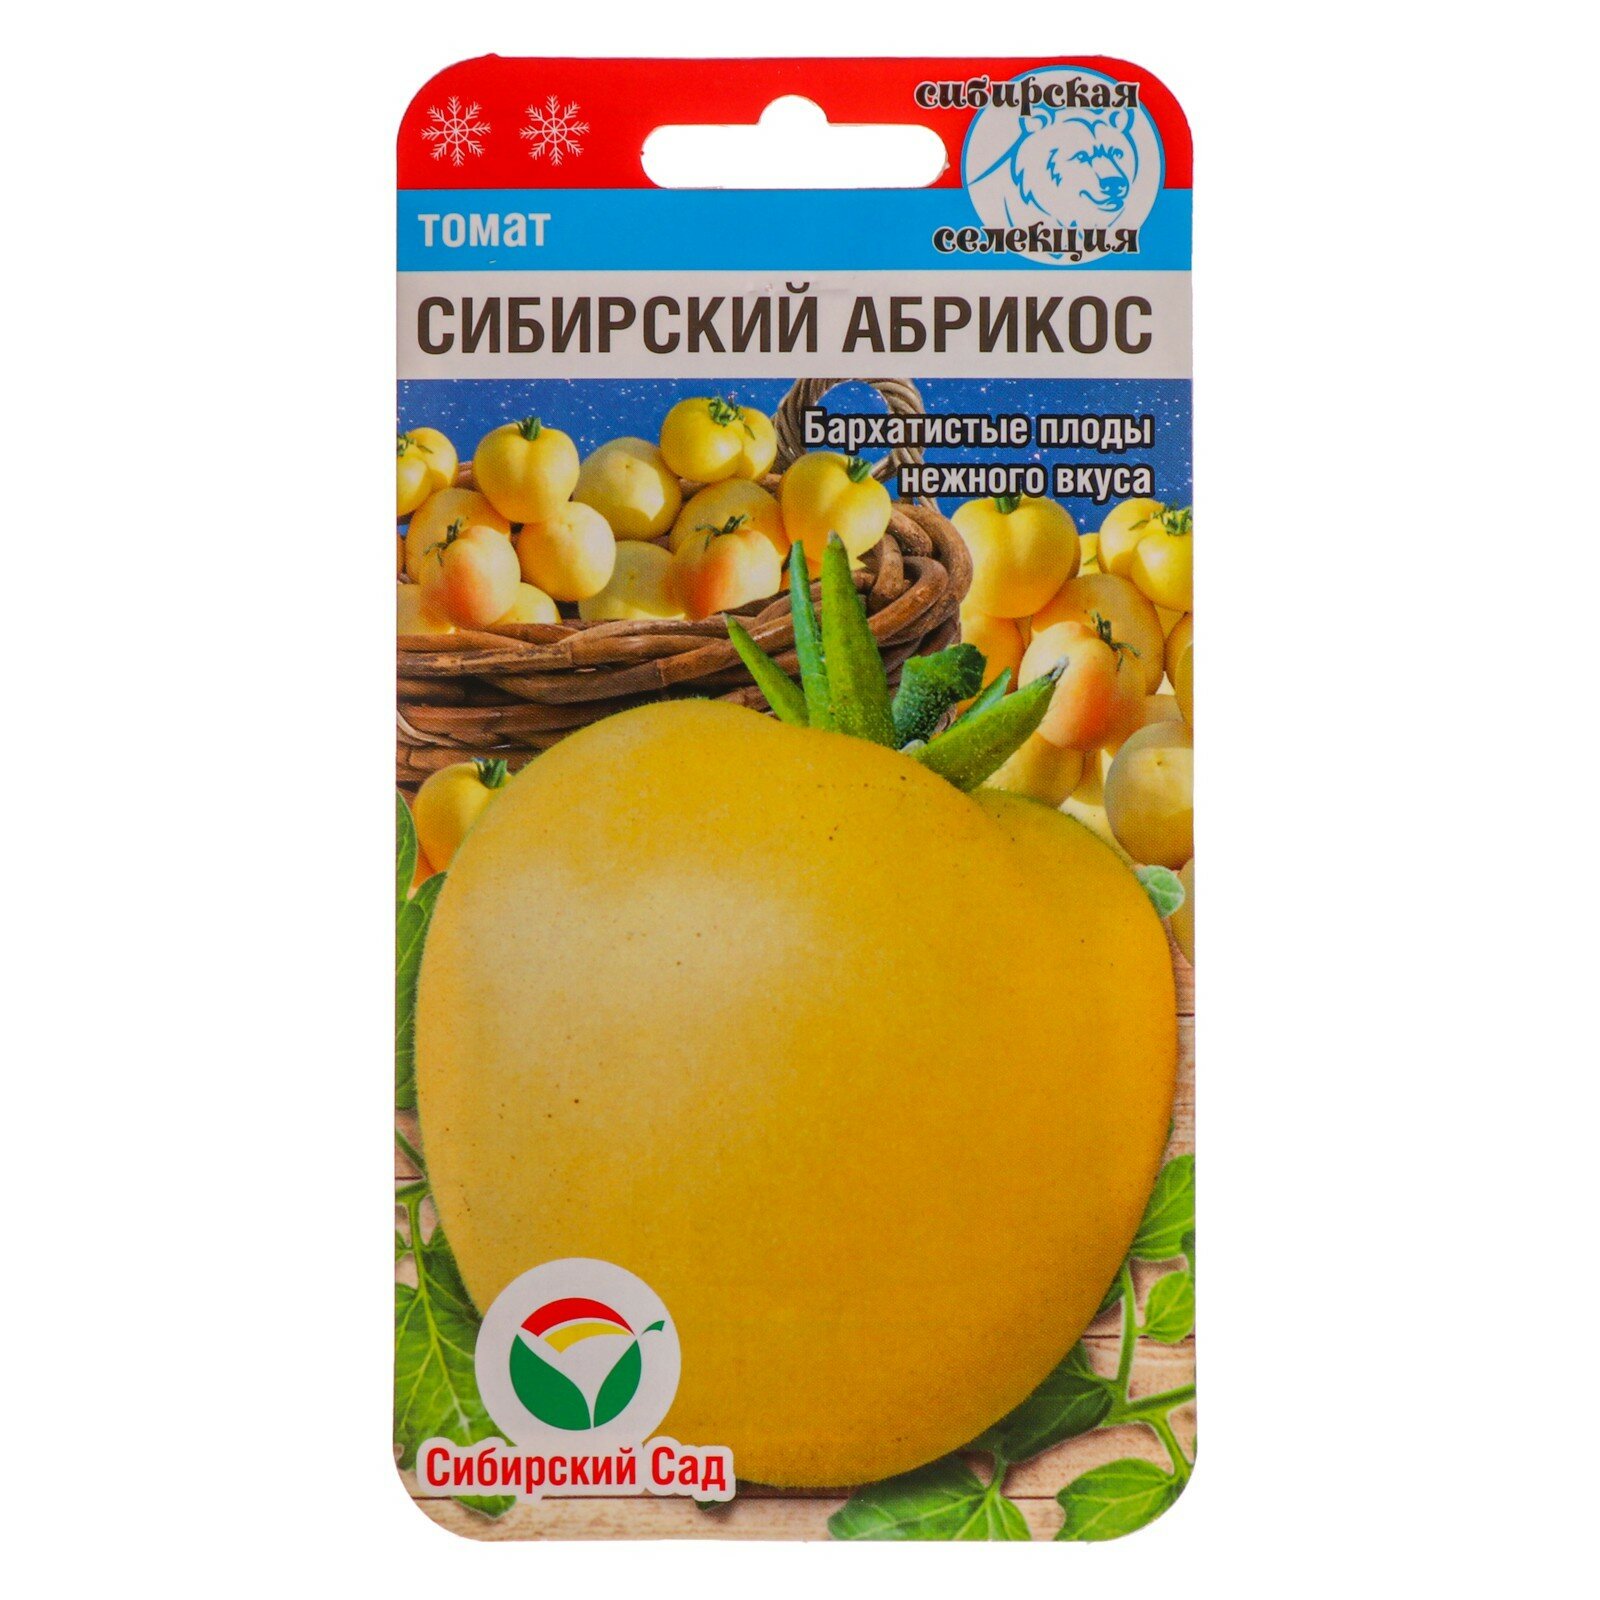 Семена Томат "Сибирский абрикос", 20 шт (2шт.)